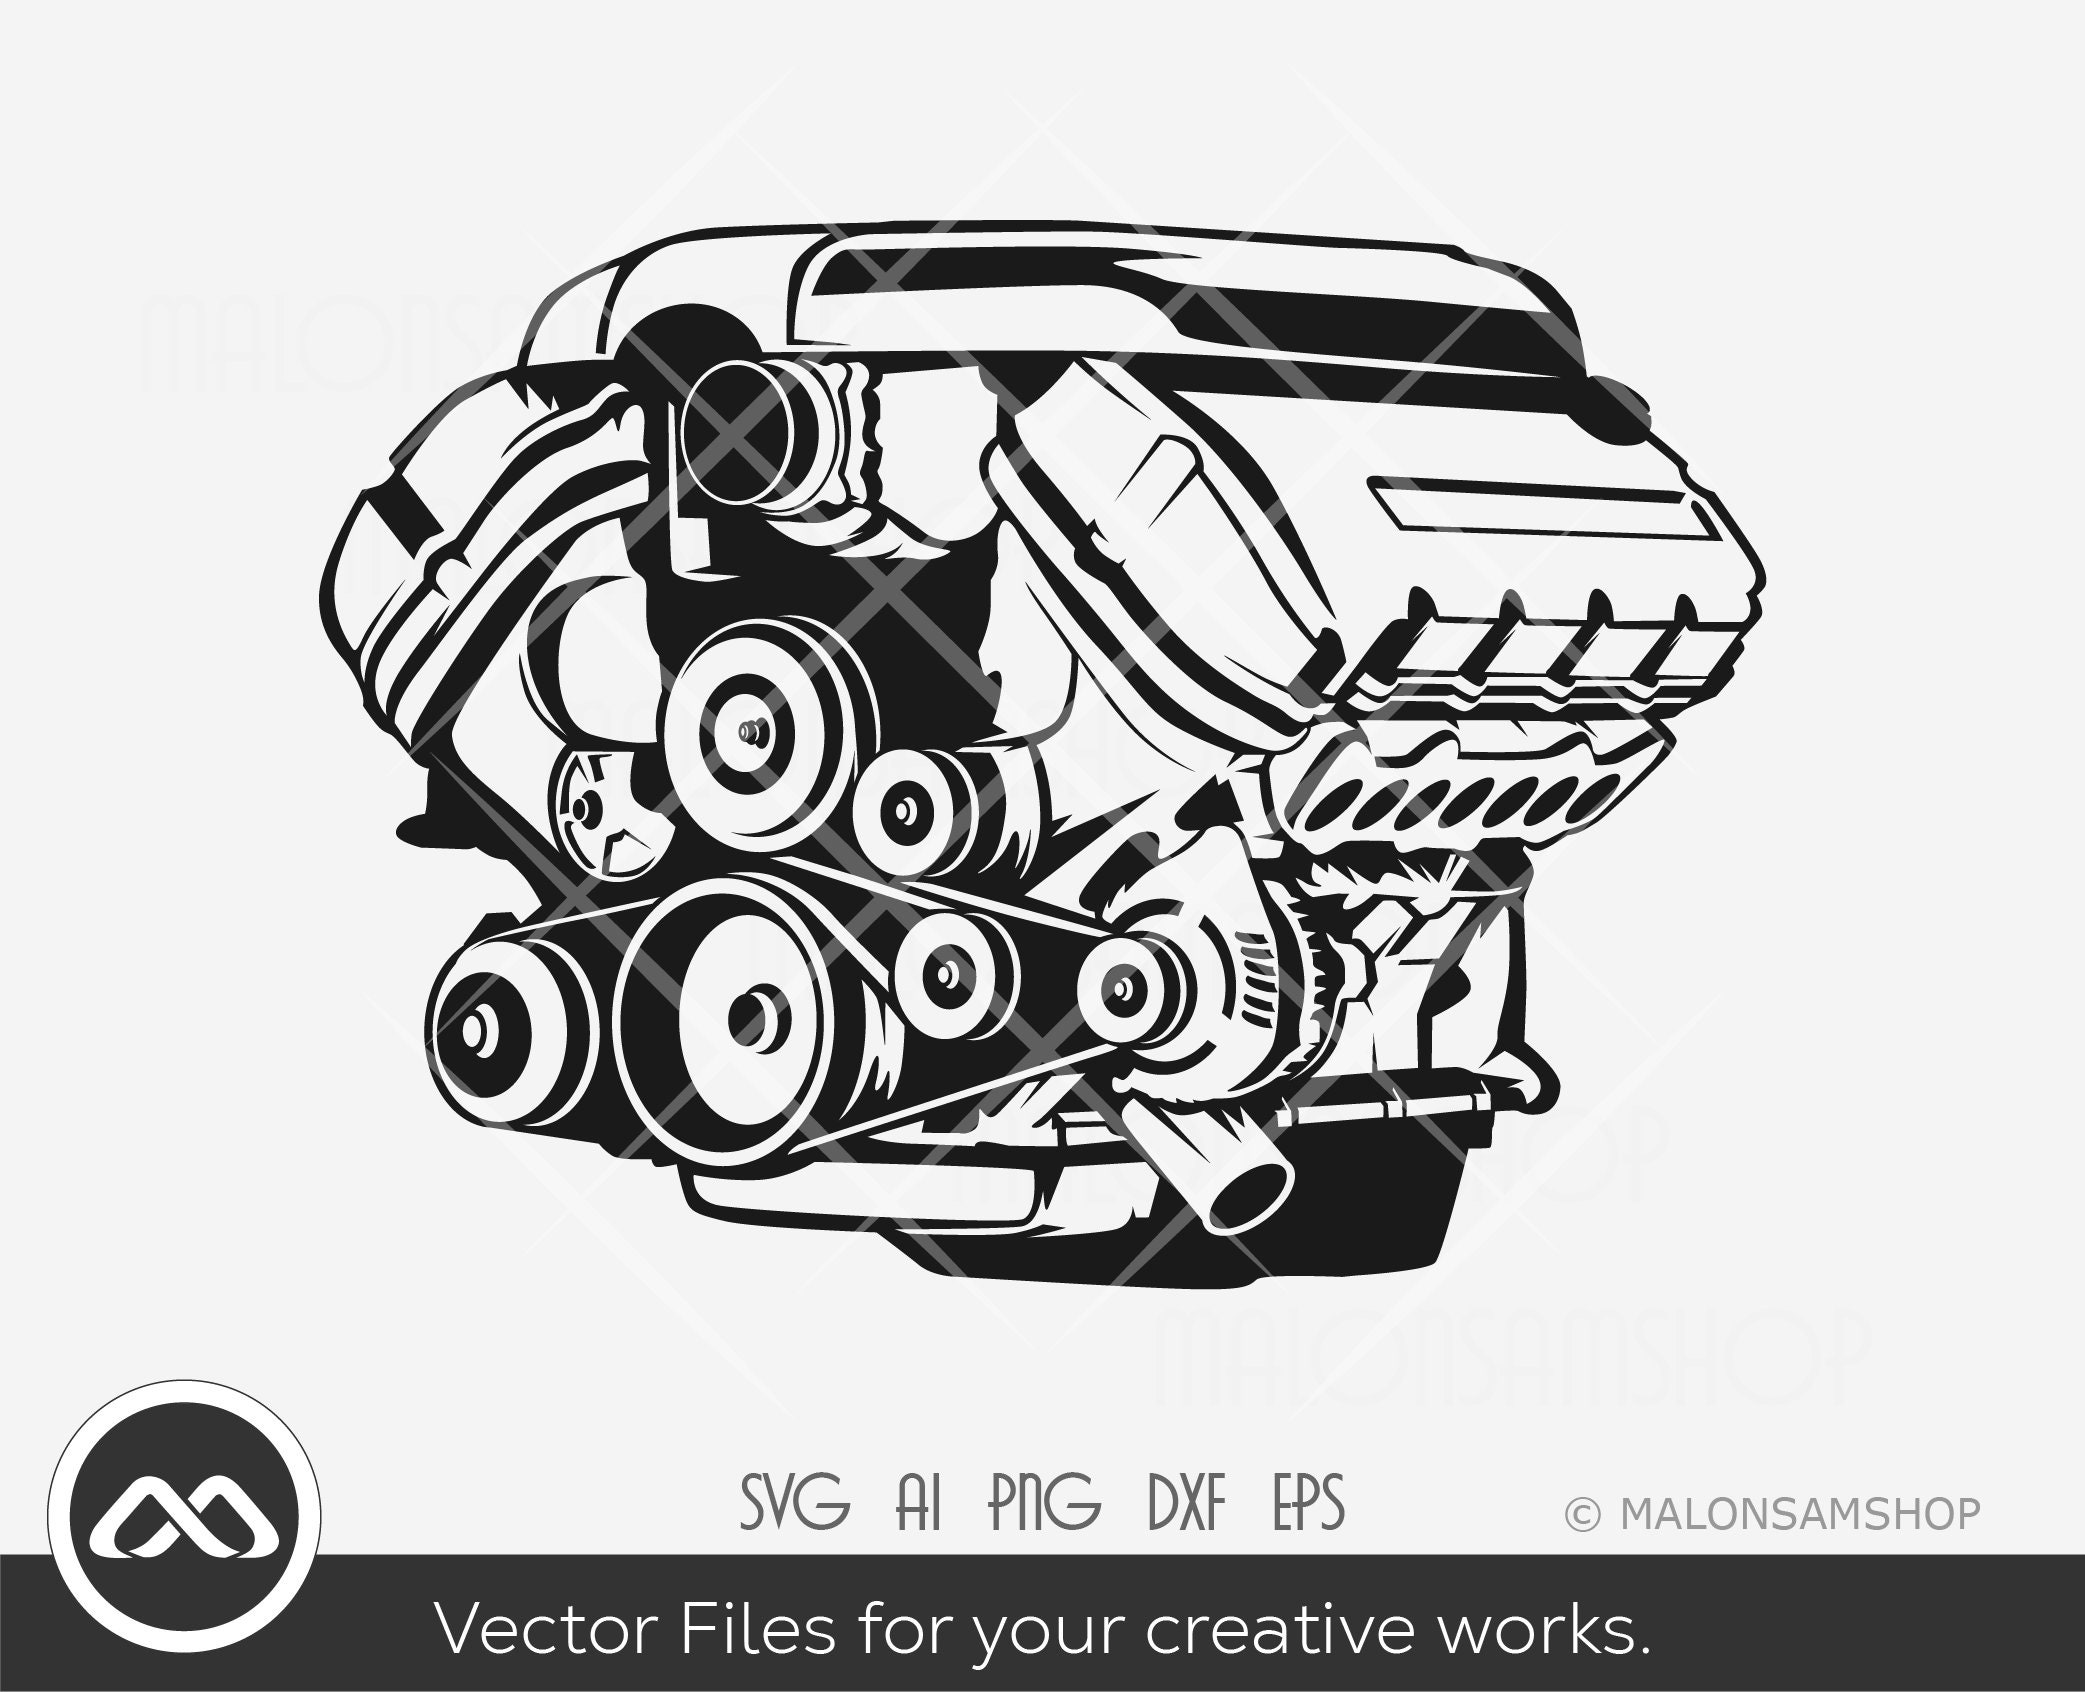 Truck Engine SVG Illustration Car Engine Svg, Engine Png, Car